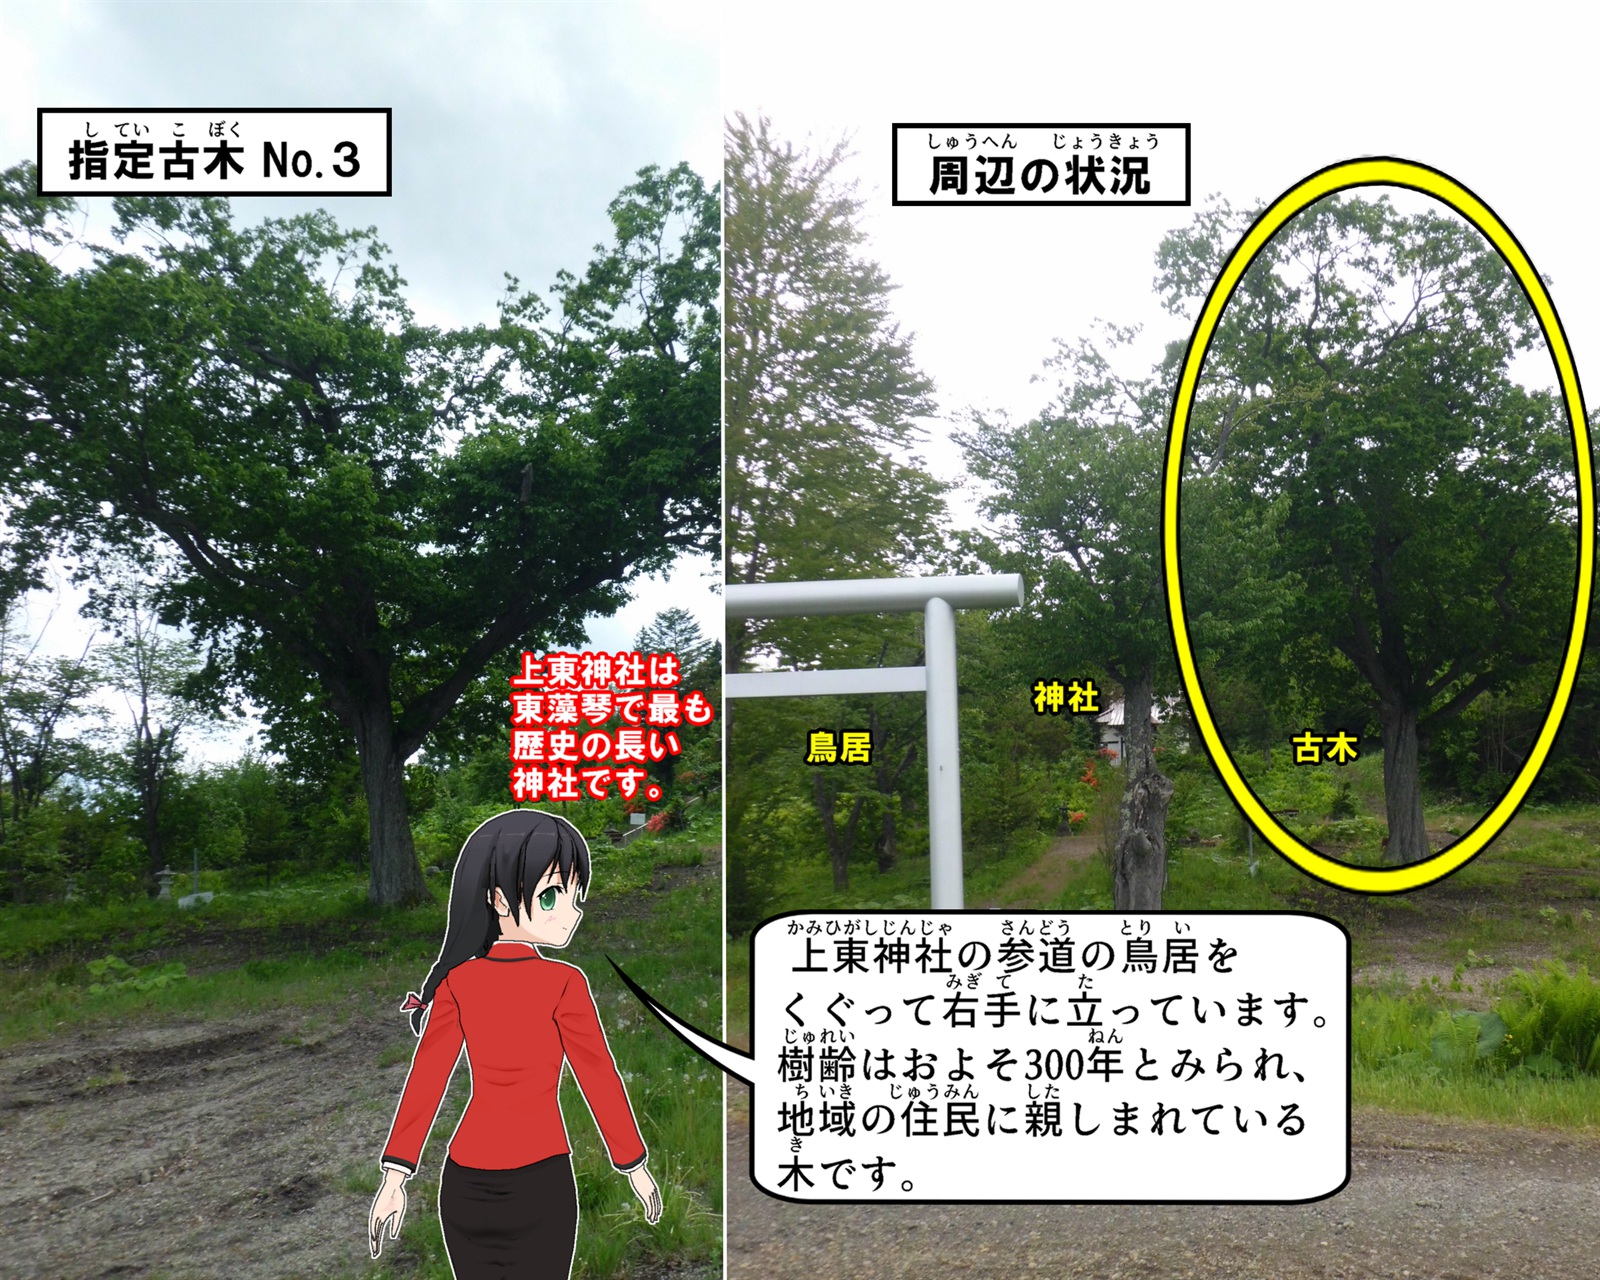 上東神社の参道の鳥居をくぐって右手に立っているミズナラの写真の説明をしているイラスト